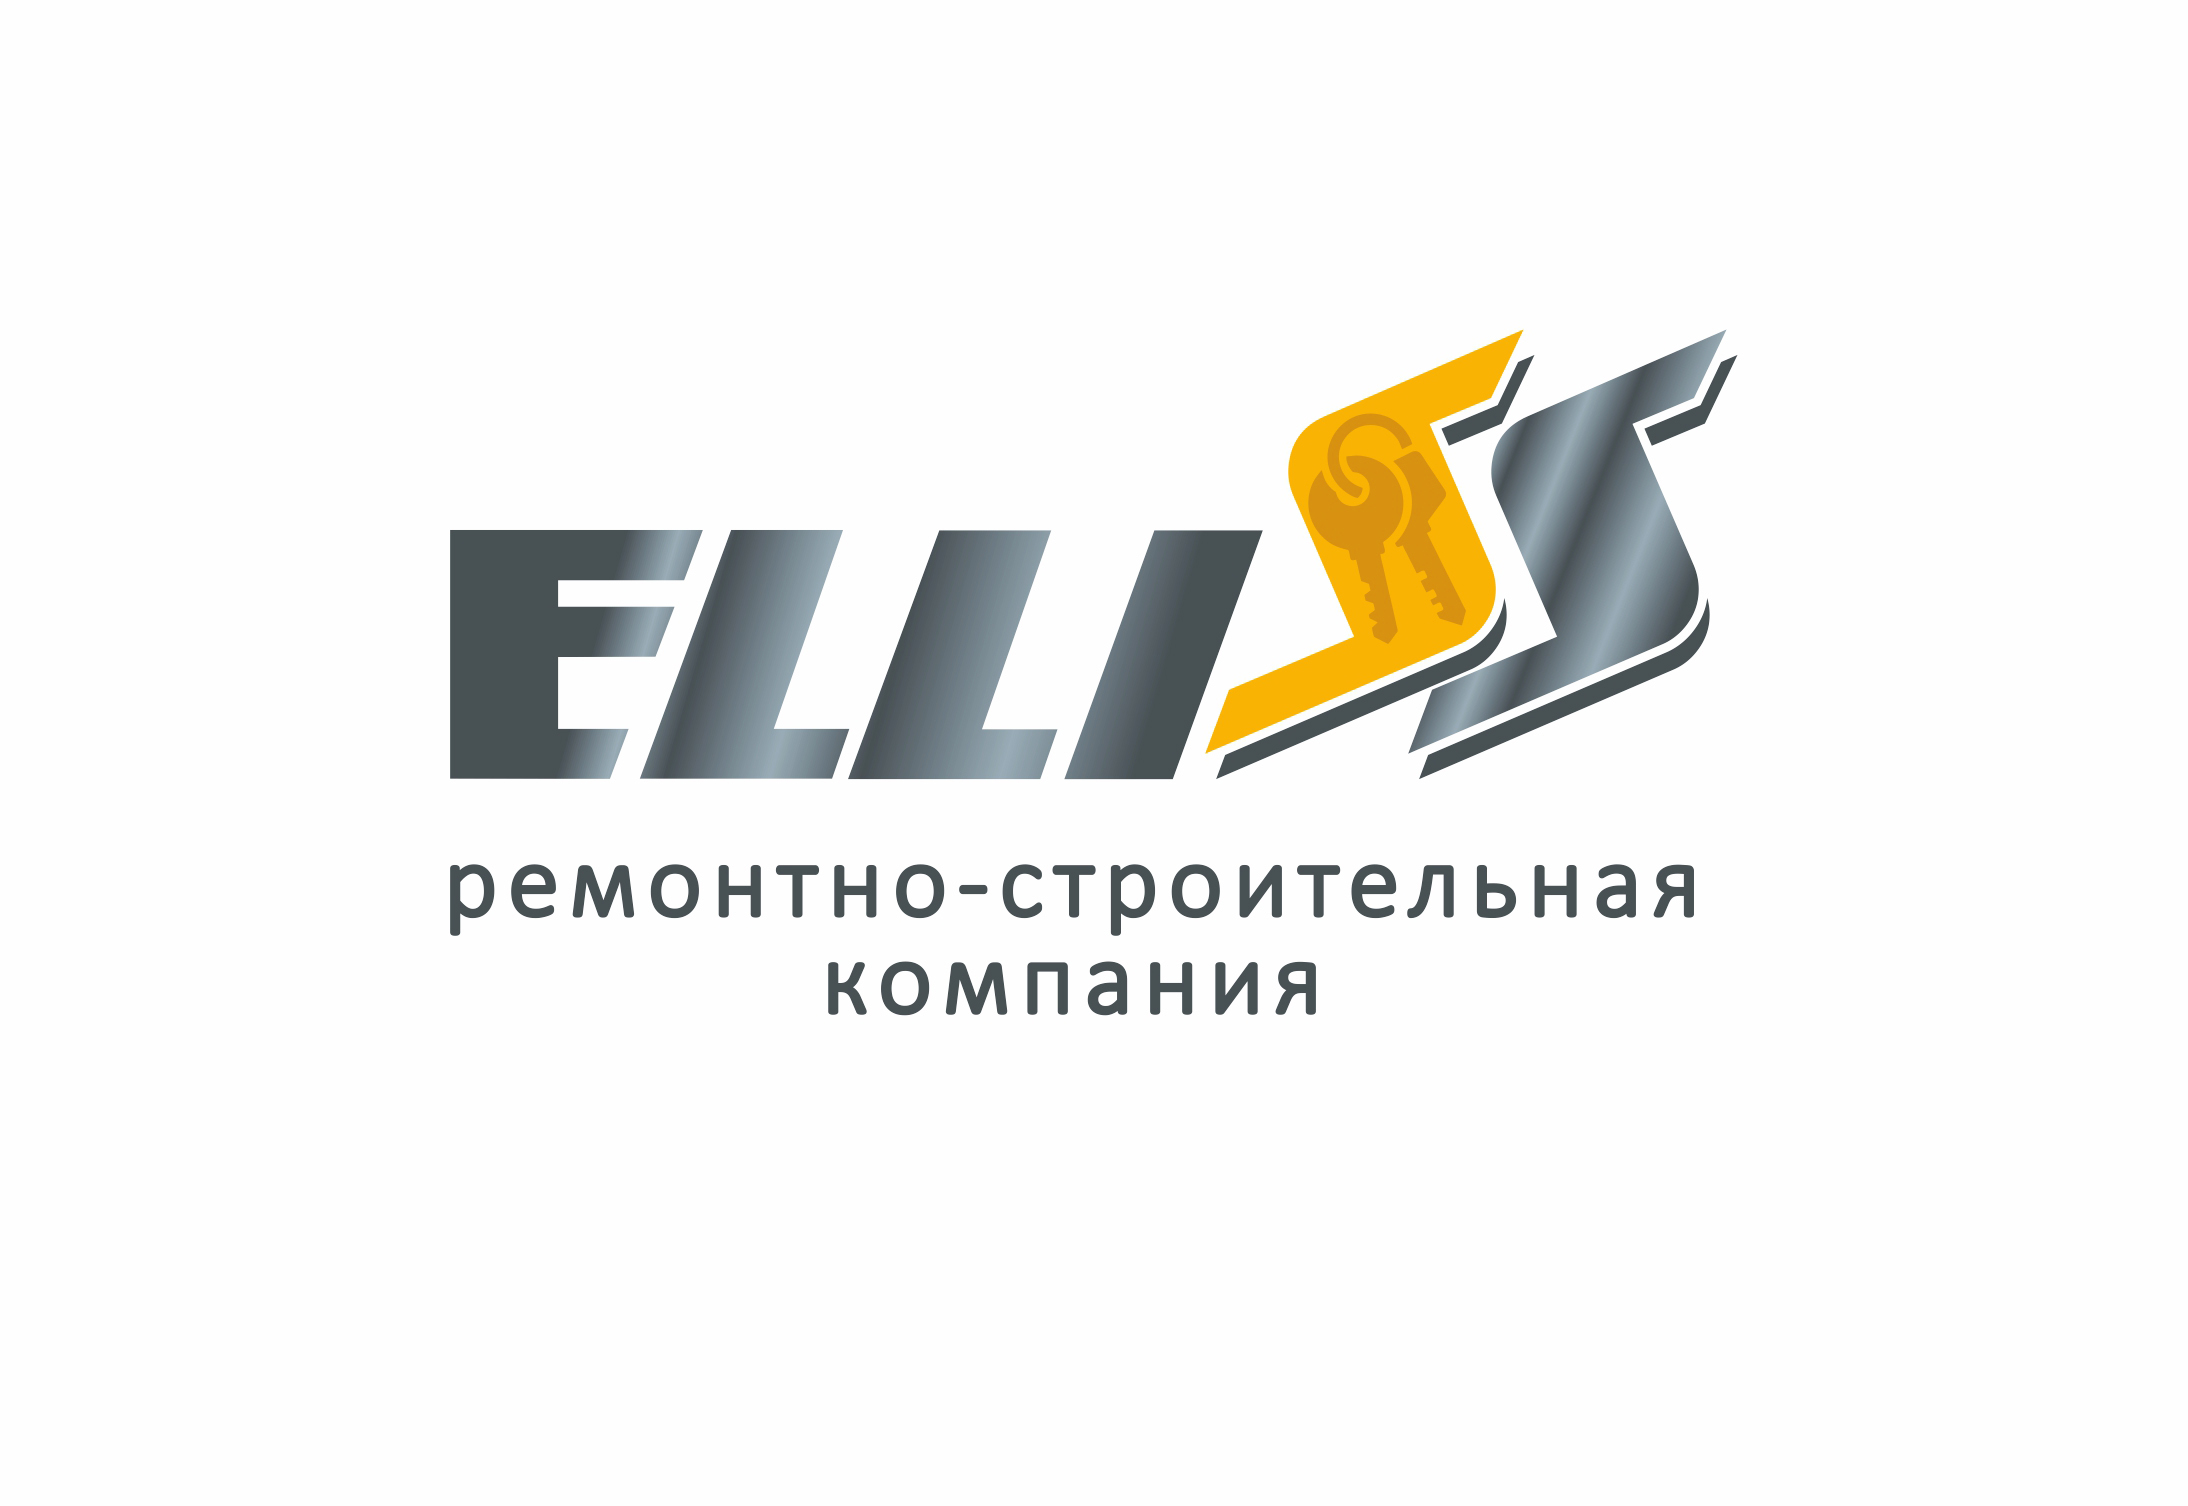 Разработка логотипа для ремонтно-строительной компании ELLISS